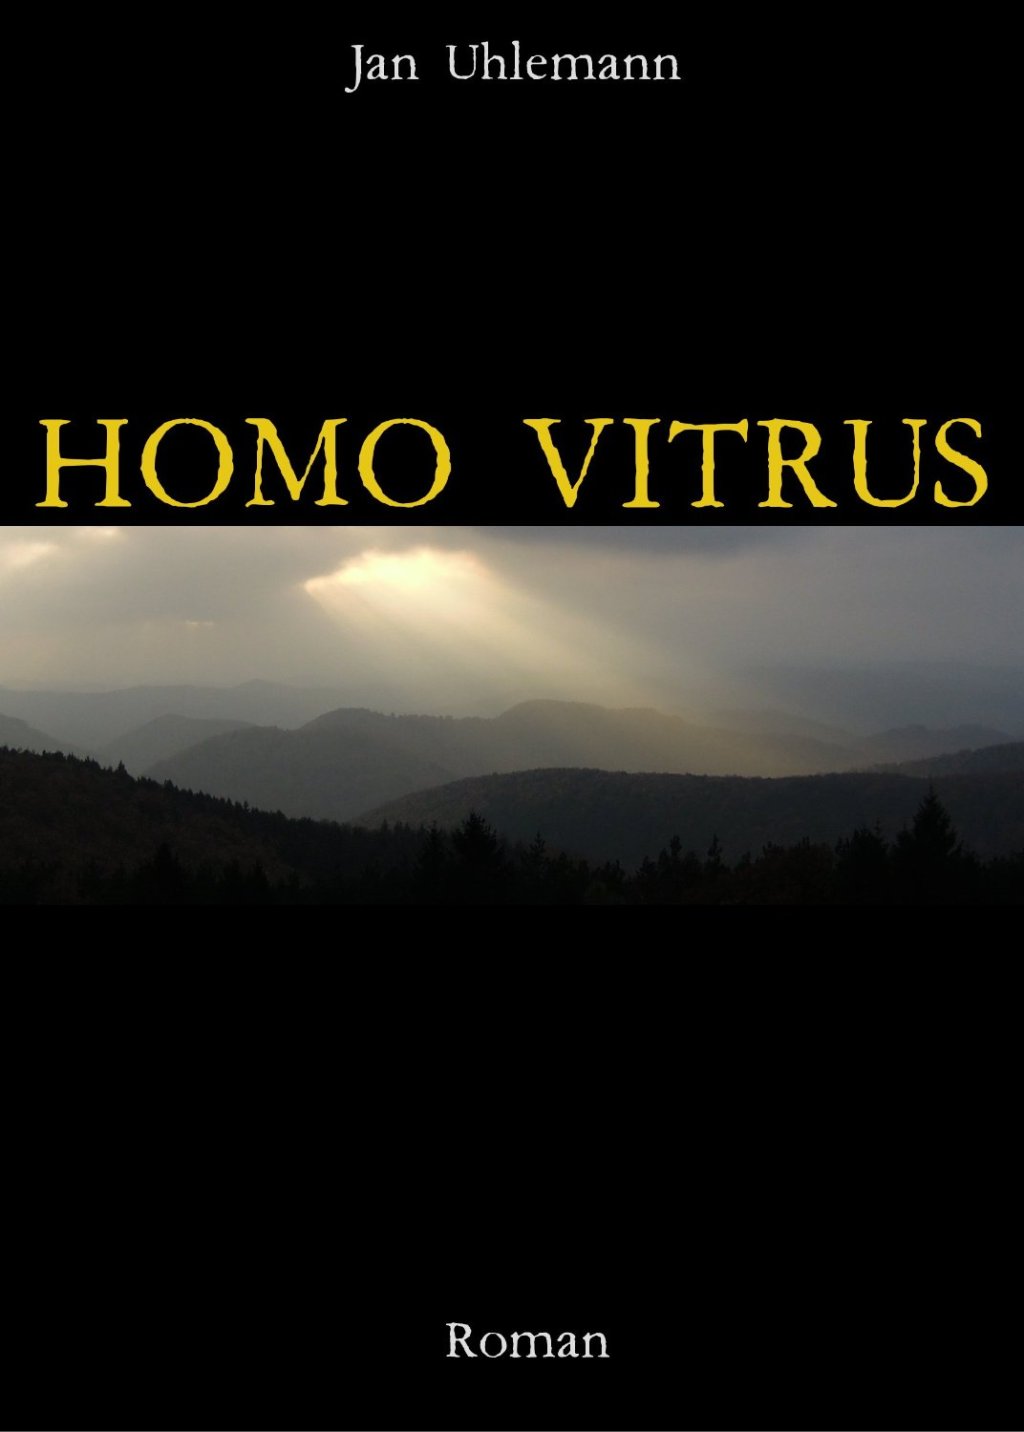 Meine Buchvorstellung: Jan Uhlemann – Homo Vitrus